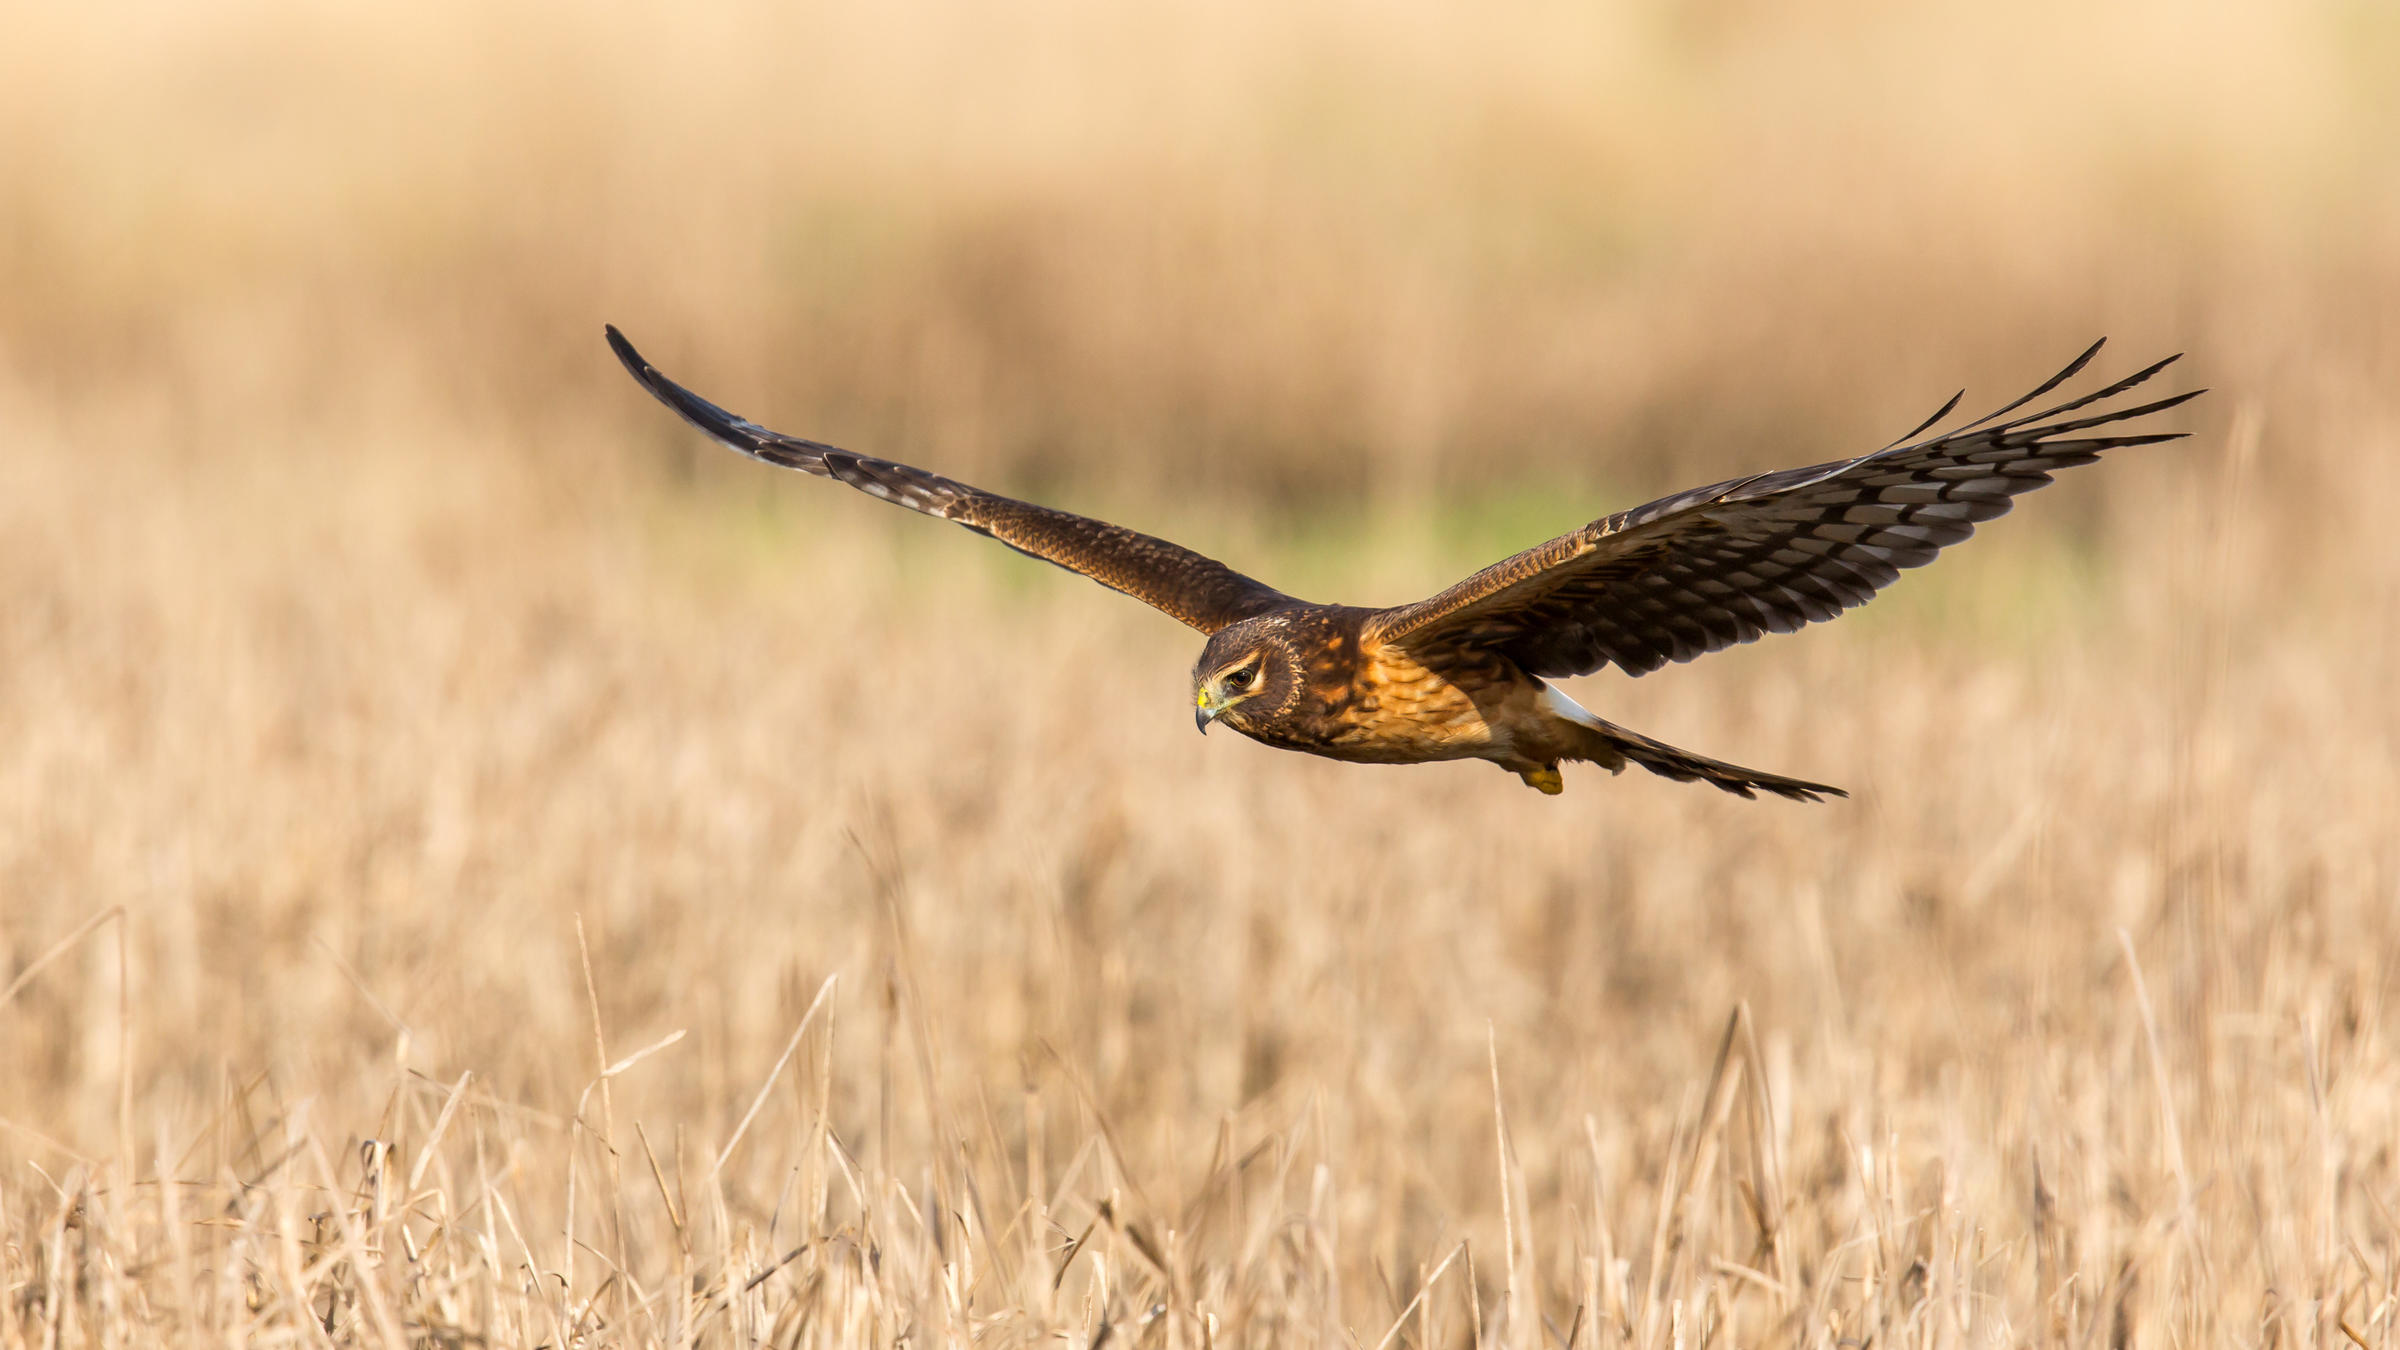 Northern Harrier flying over grasslands.